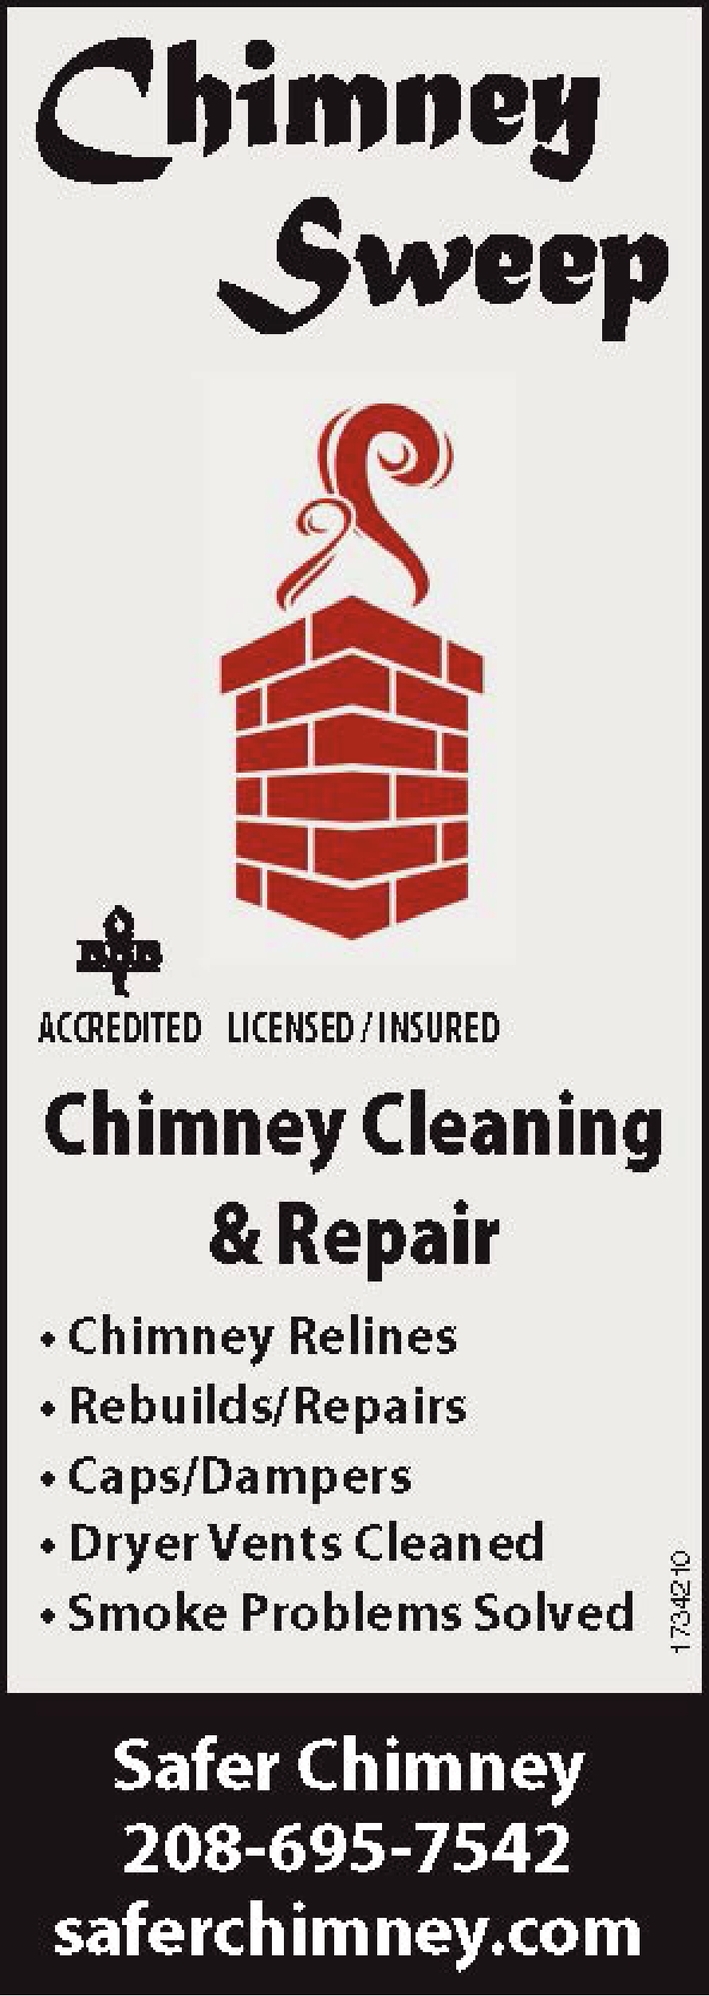 Chimney Cleaning & Repair